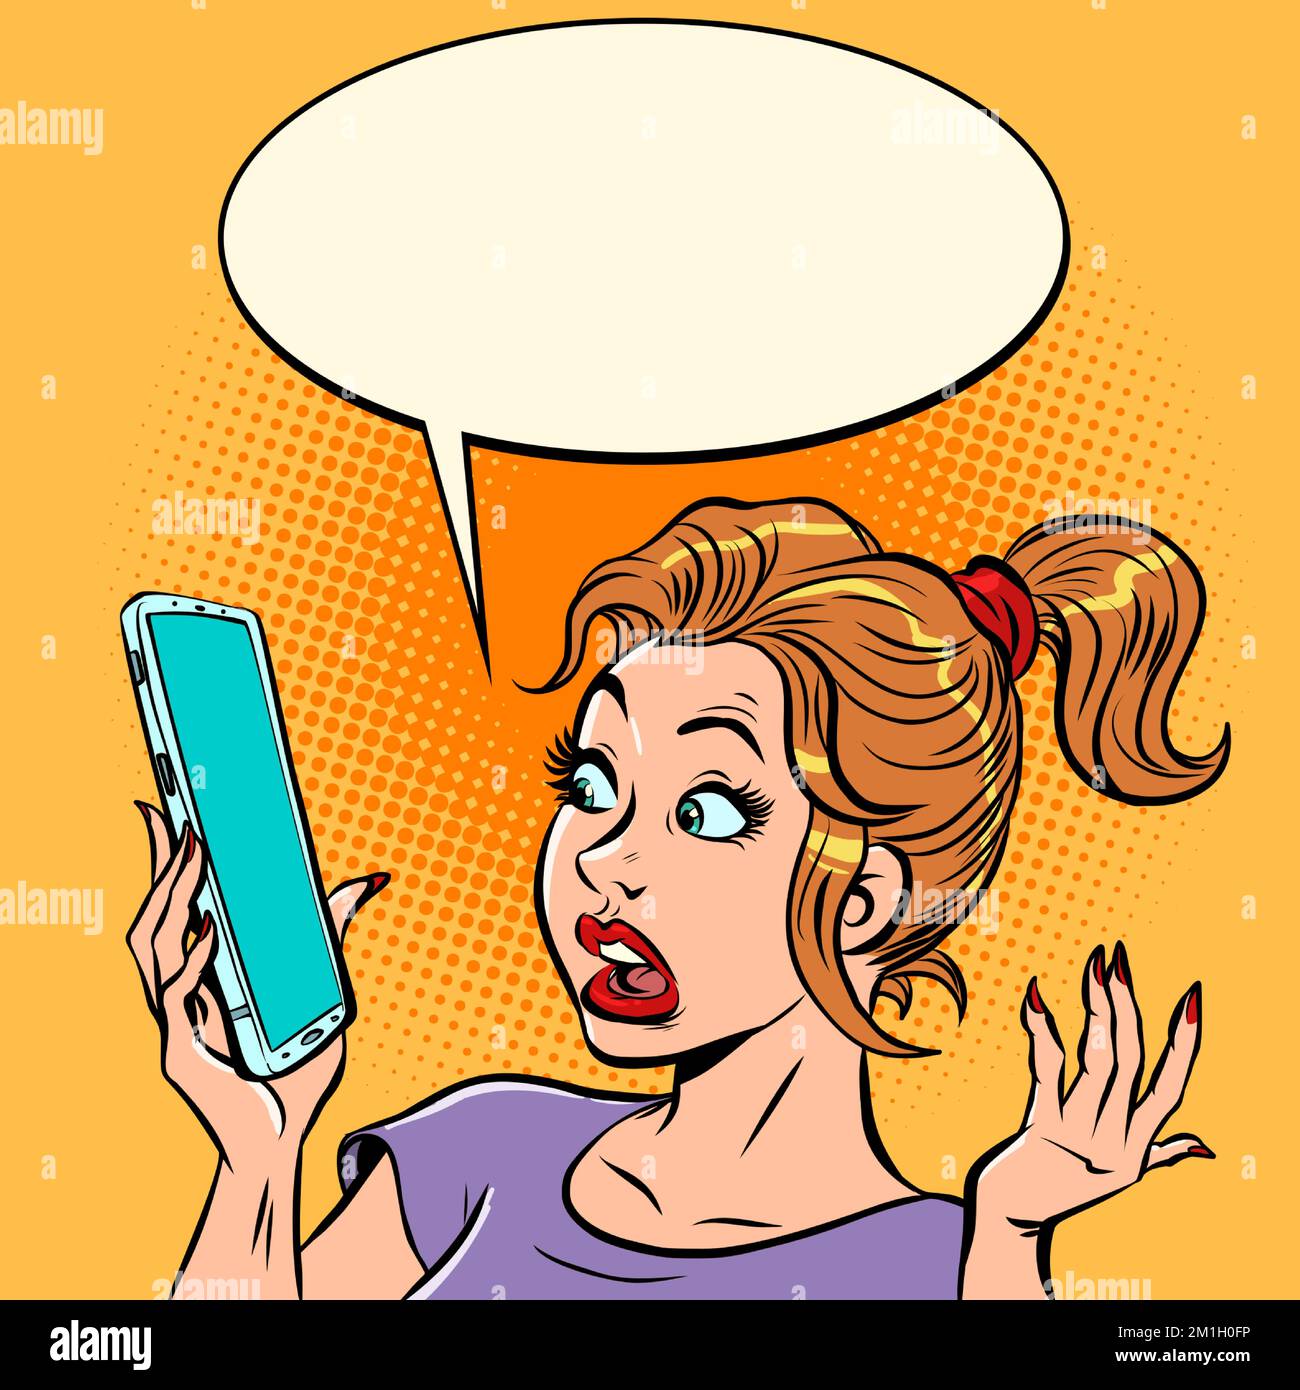 Eine verängstigte Frau mit einem Smartphone. Schlechte Nachrichten, Überraschung und Verwirrung Stock Vektor